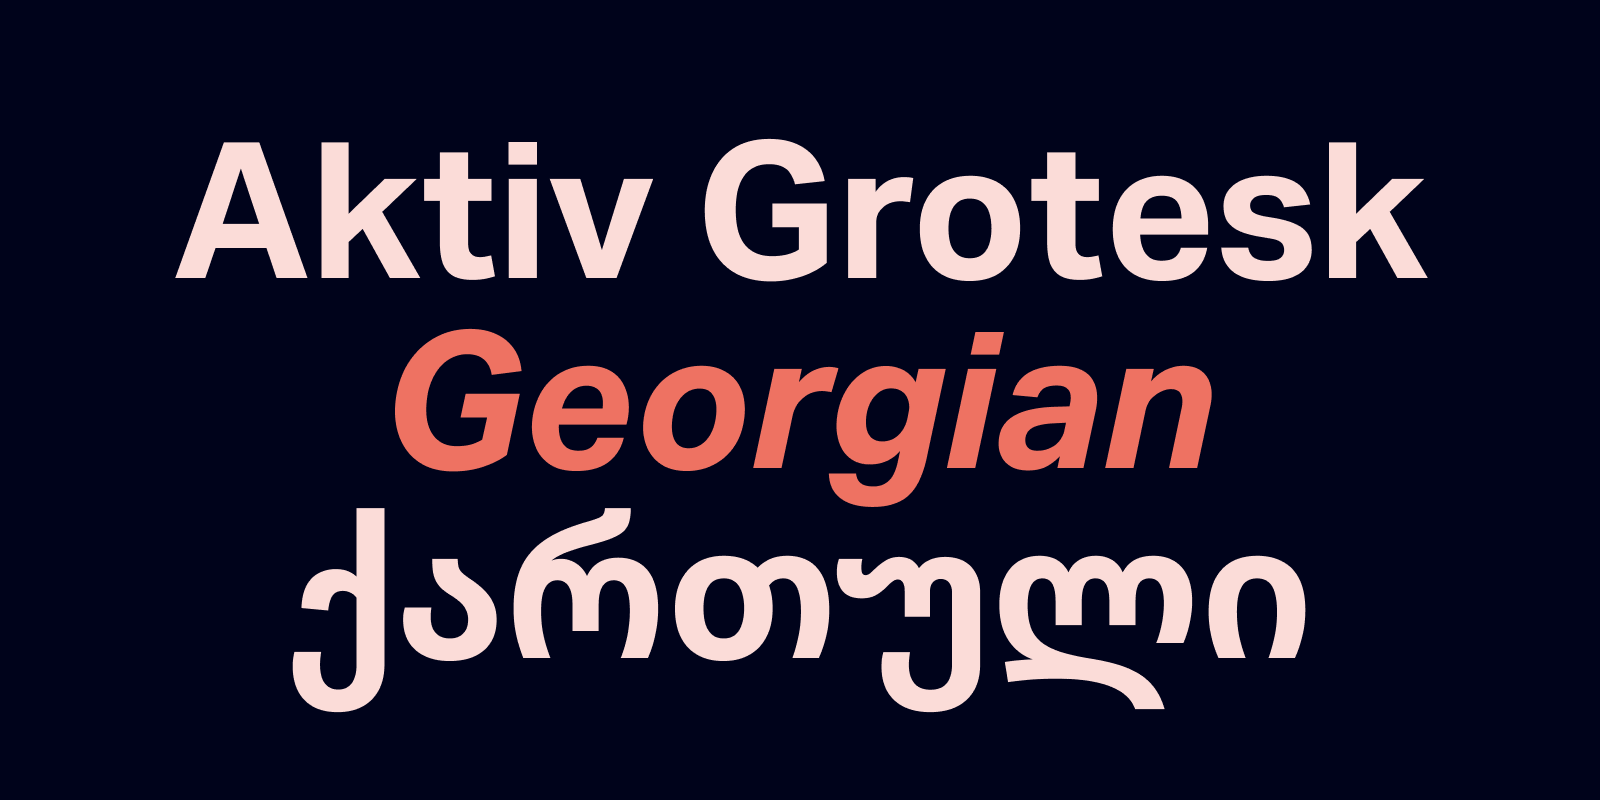 Card displaying Aktiv Grotesk Georgian typeface in various styles